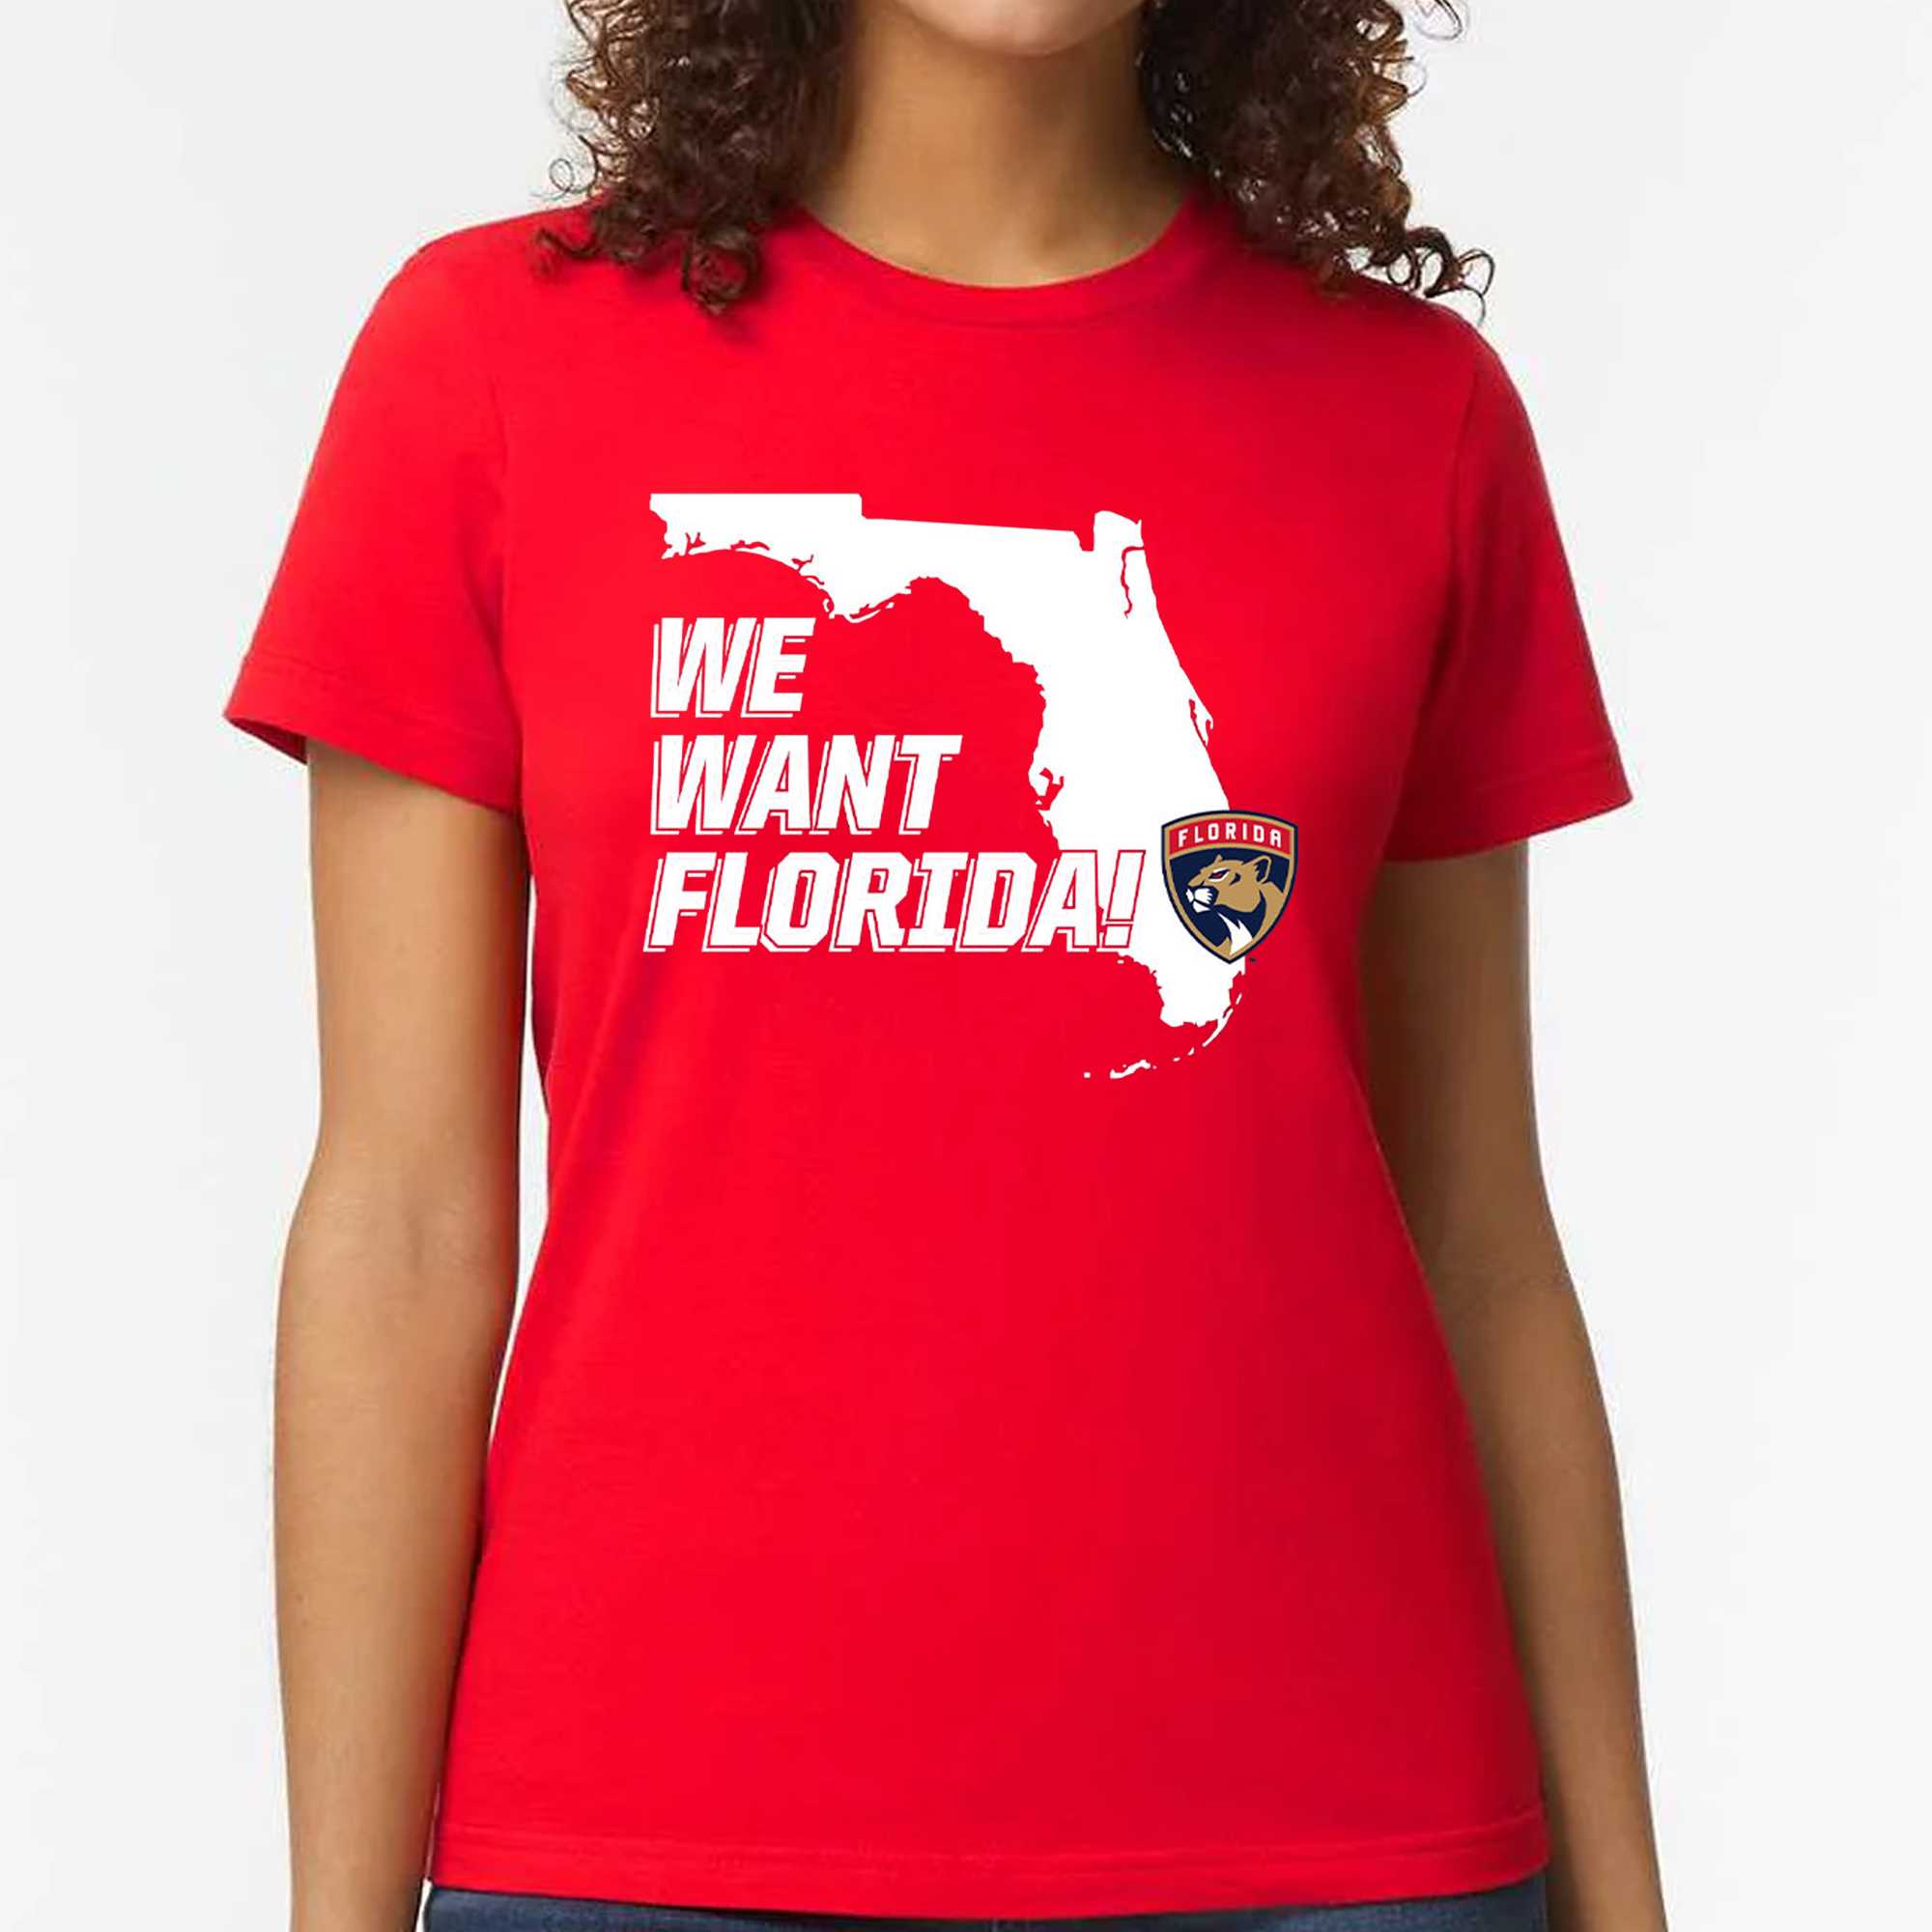 Florida Panthers We Want Florida Shirt - Shibtee Clothing